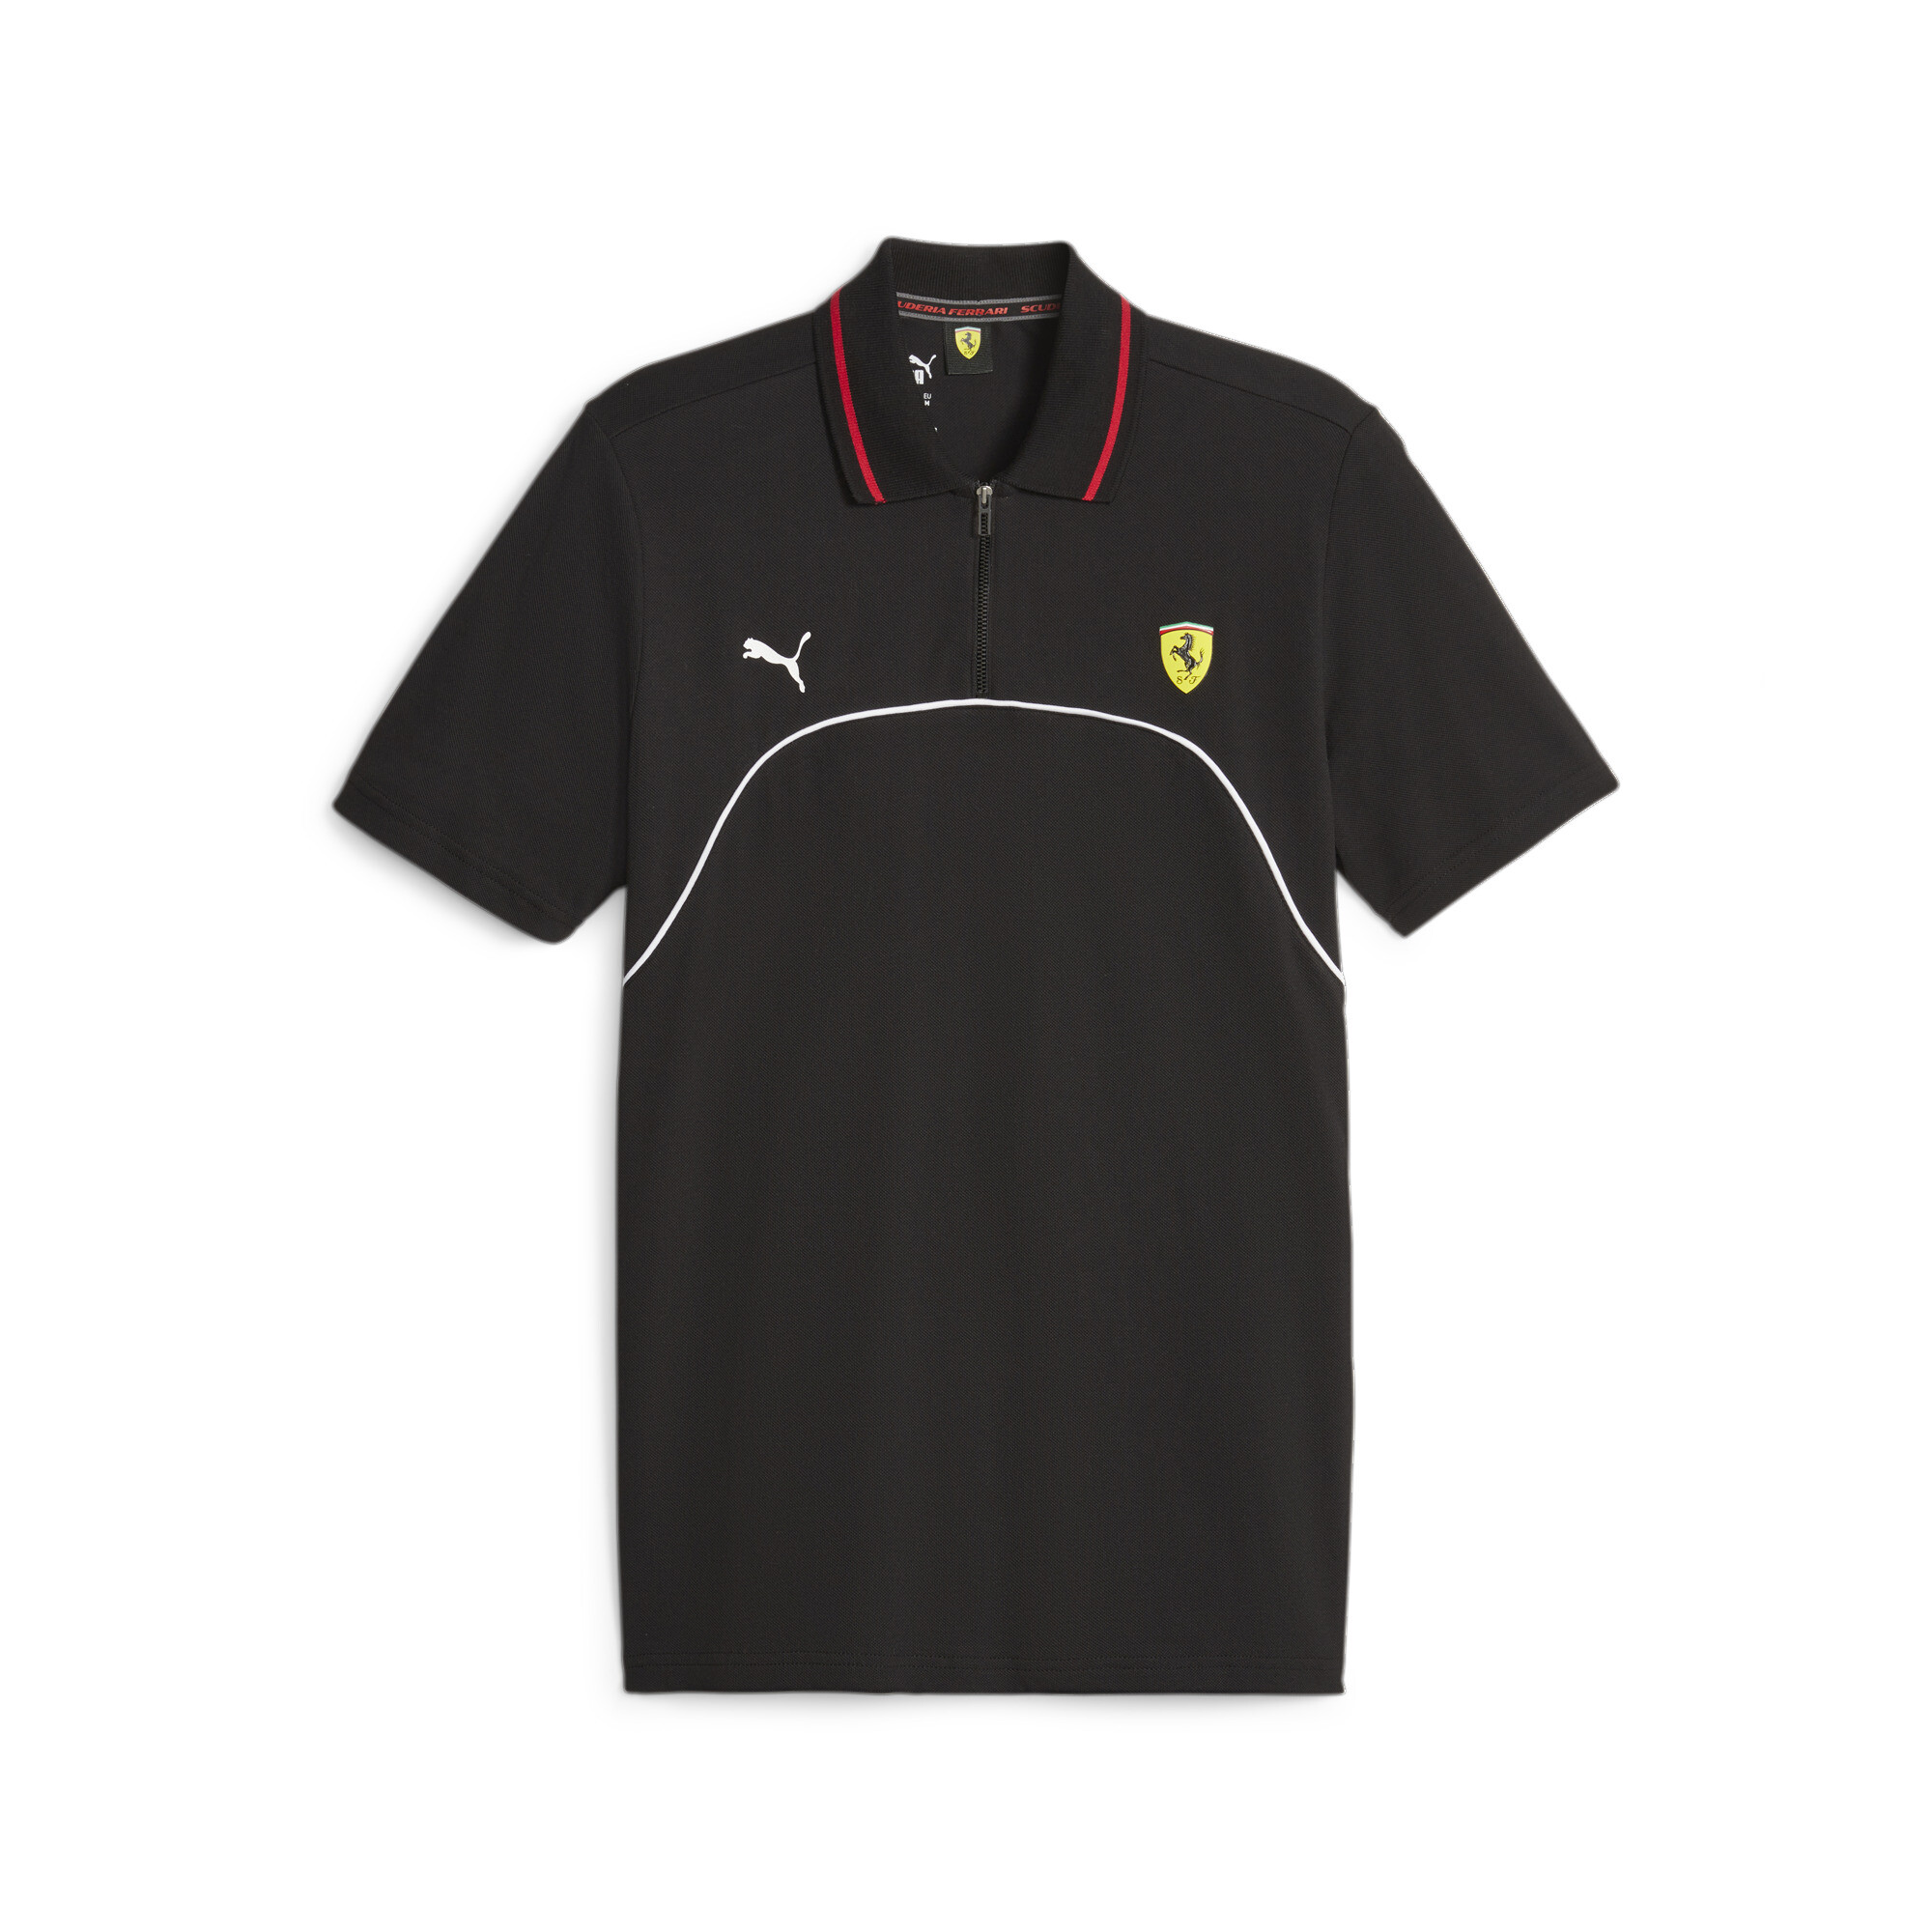 Men's PUMA Scuderia Ferrari Polo In Black, Size 2XL